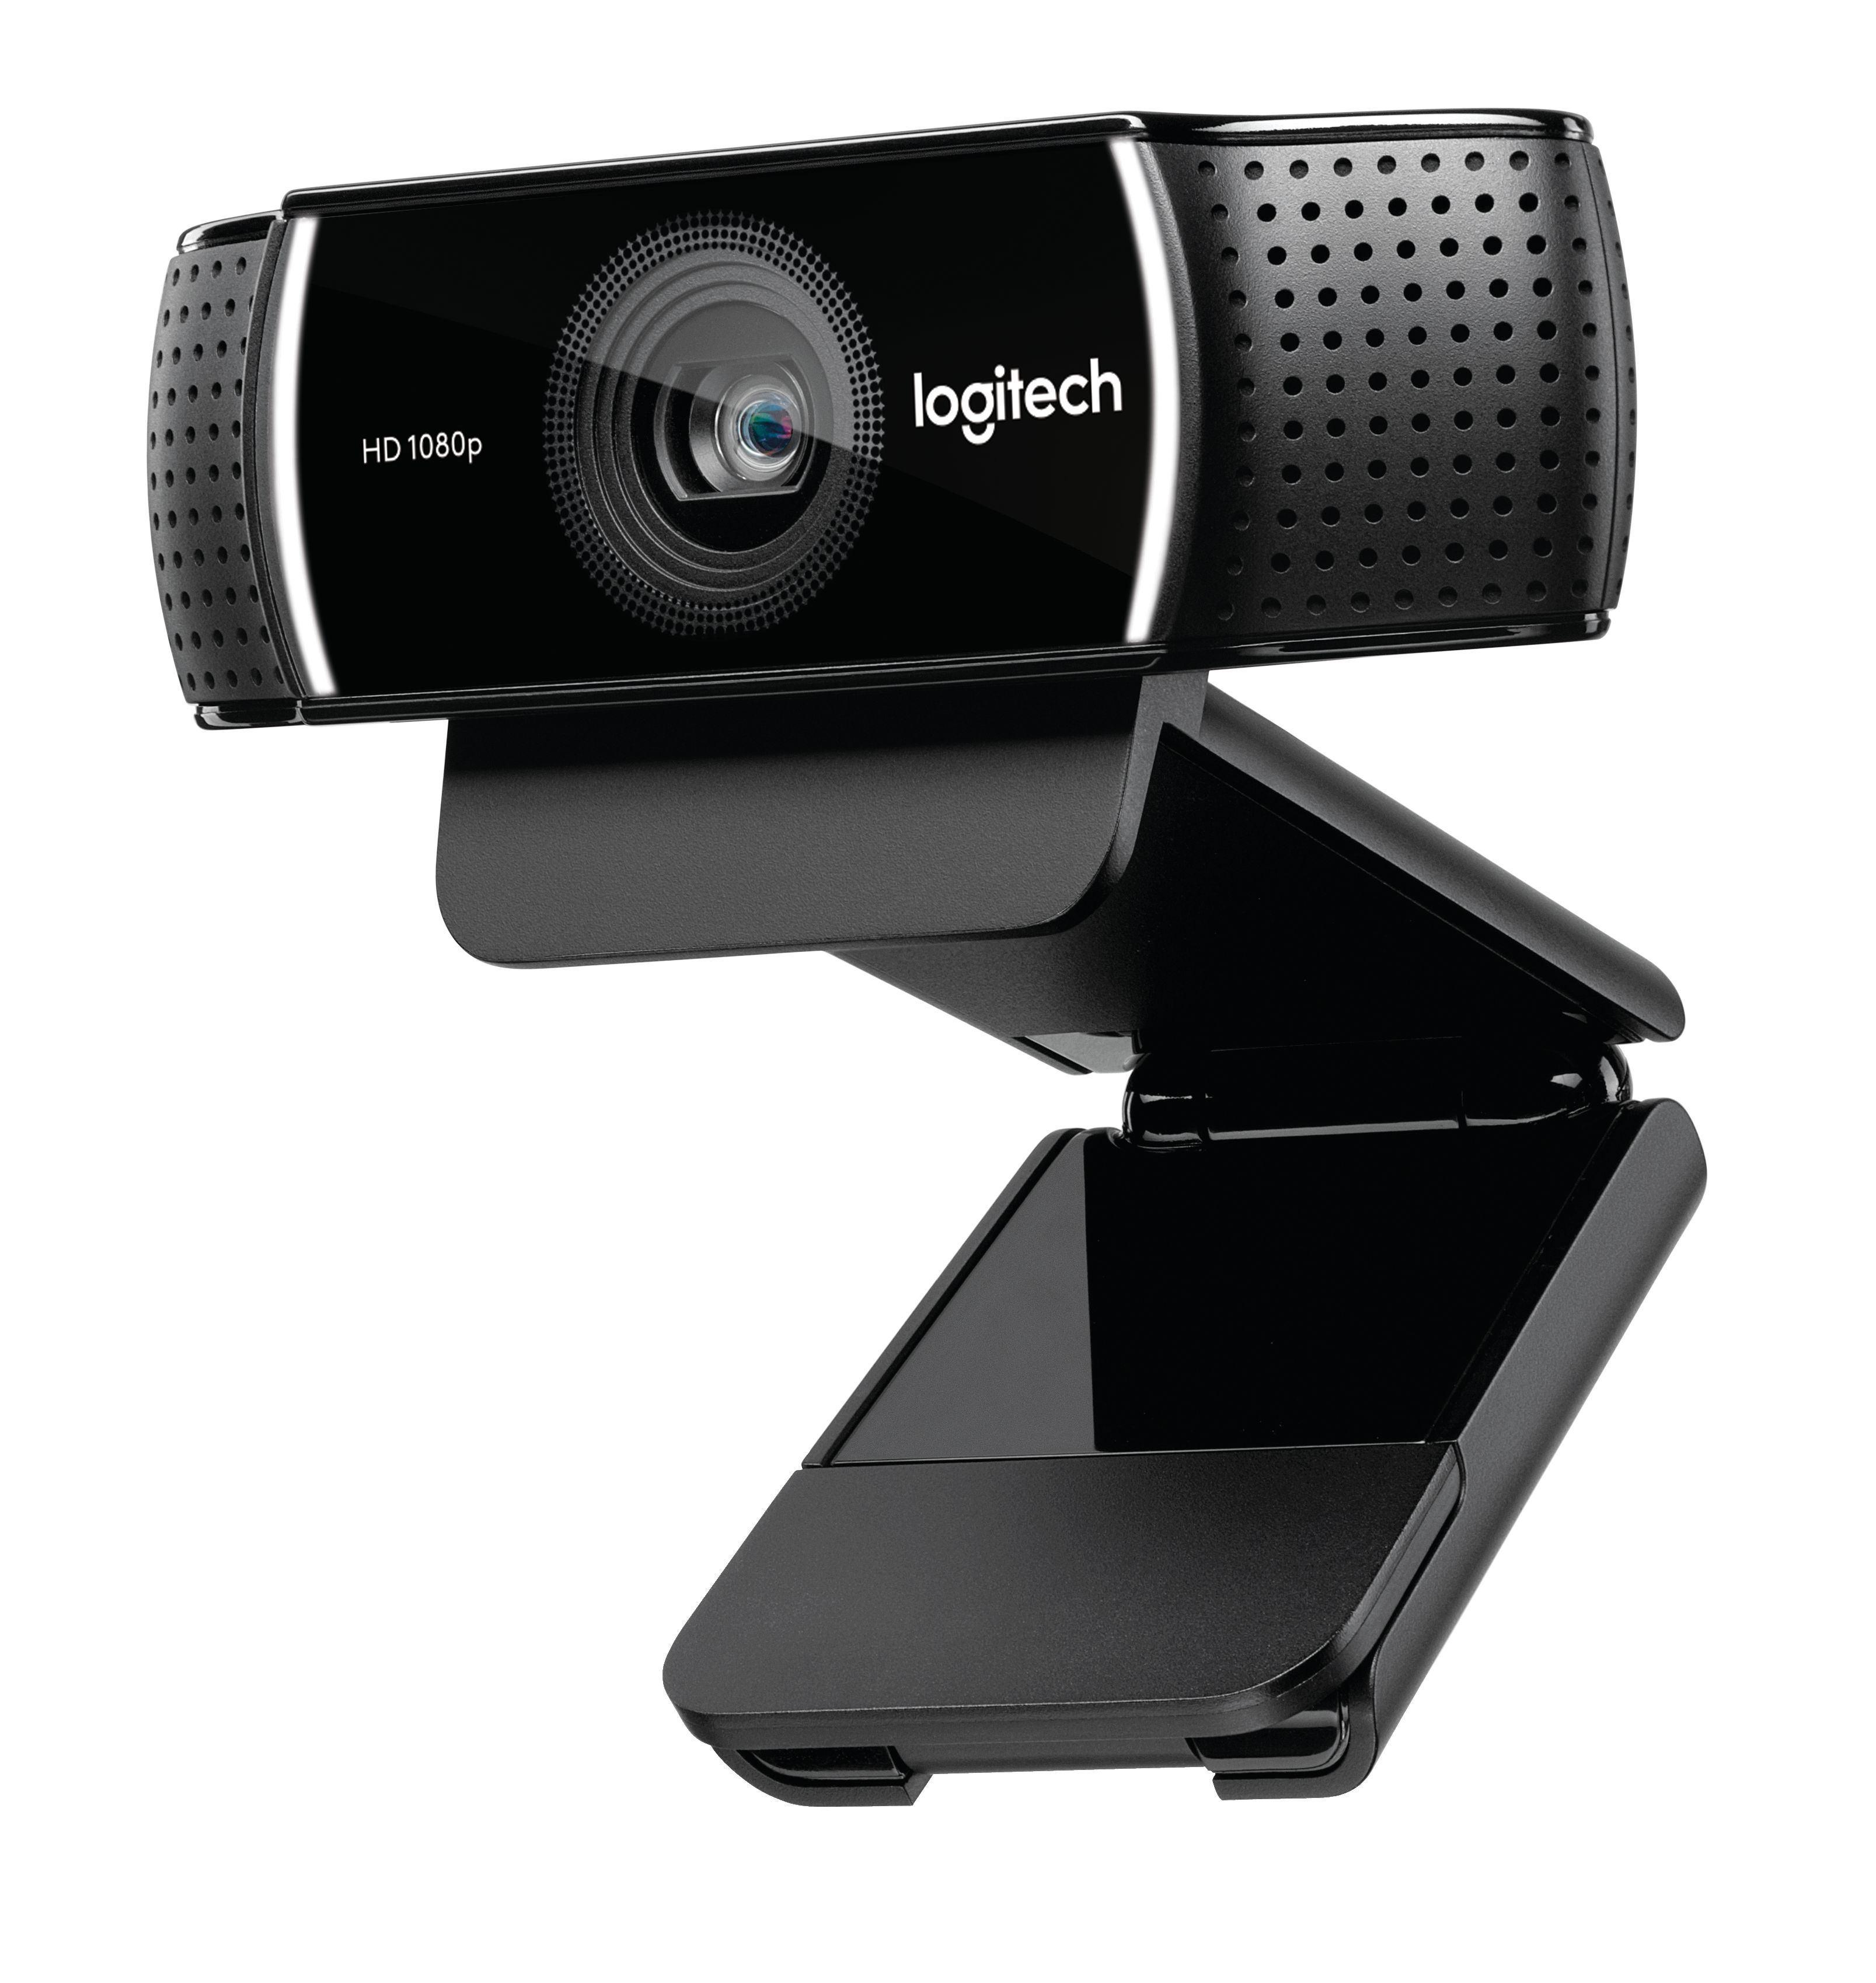 Logitech announces the new C922 Pro Stream Webcam